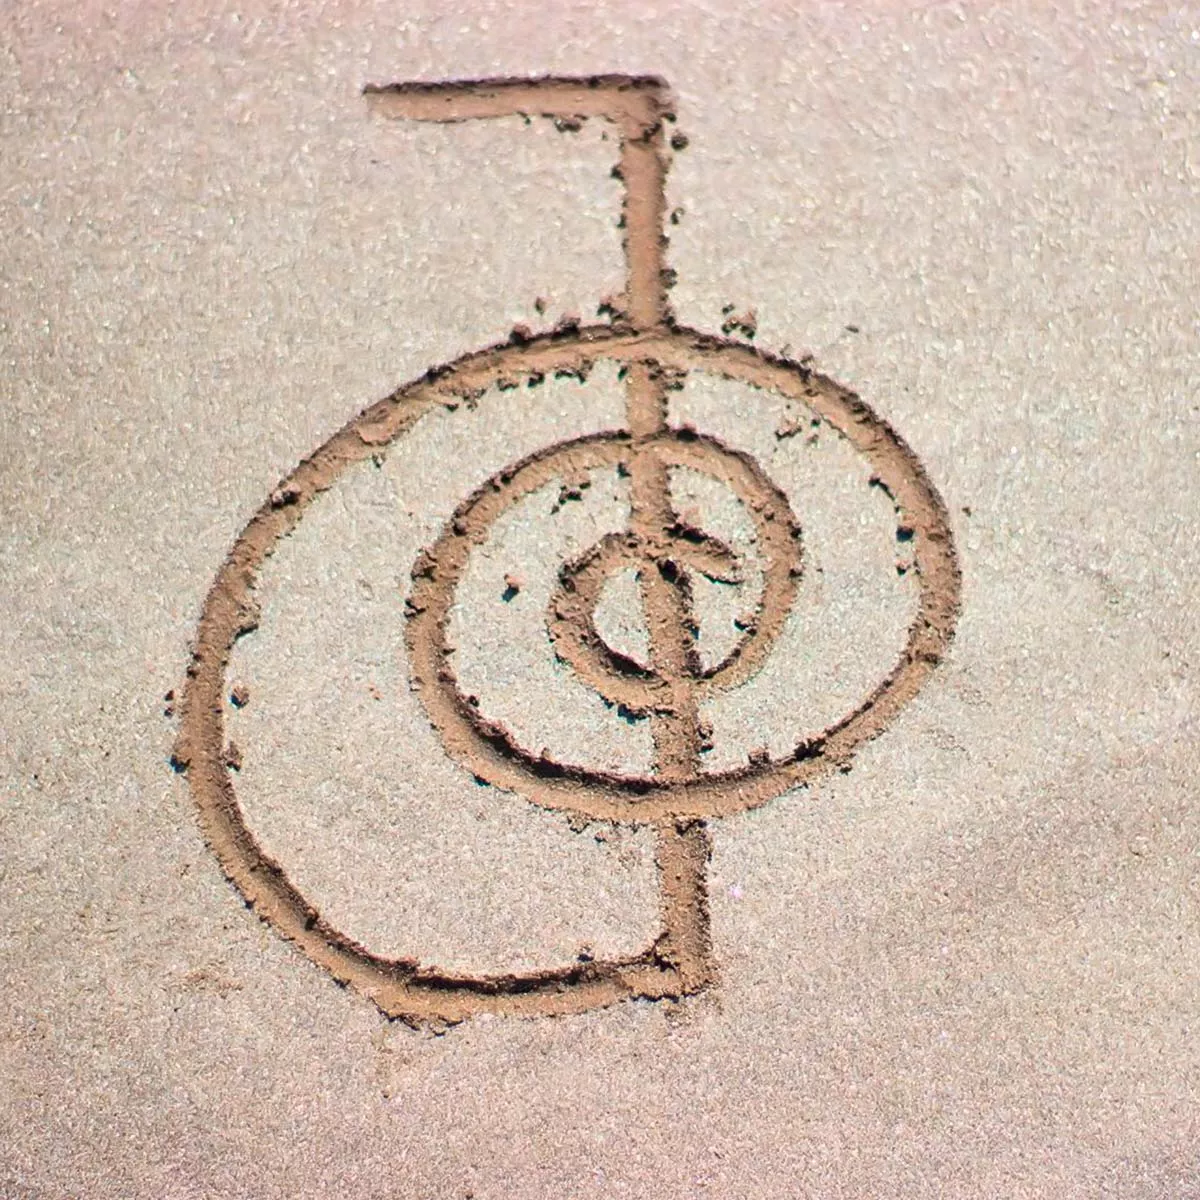 Das Reiki-Meistersymbol in Sand gemalt.